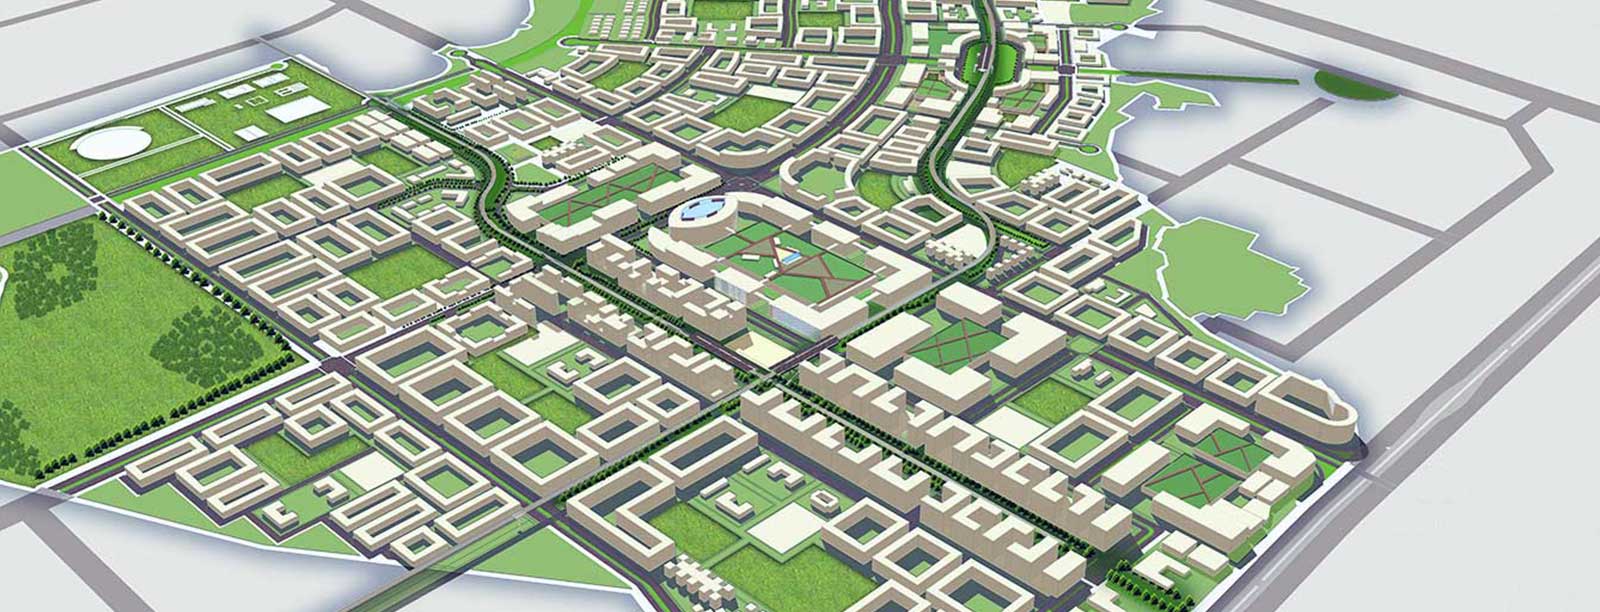 DREAM City Surat - 3D View